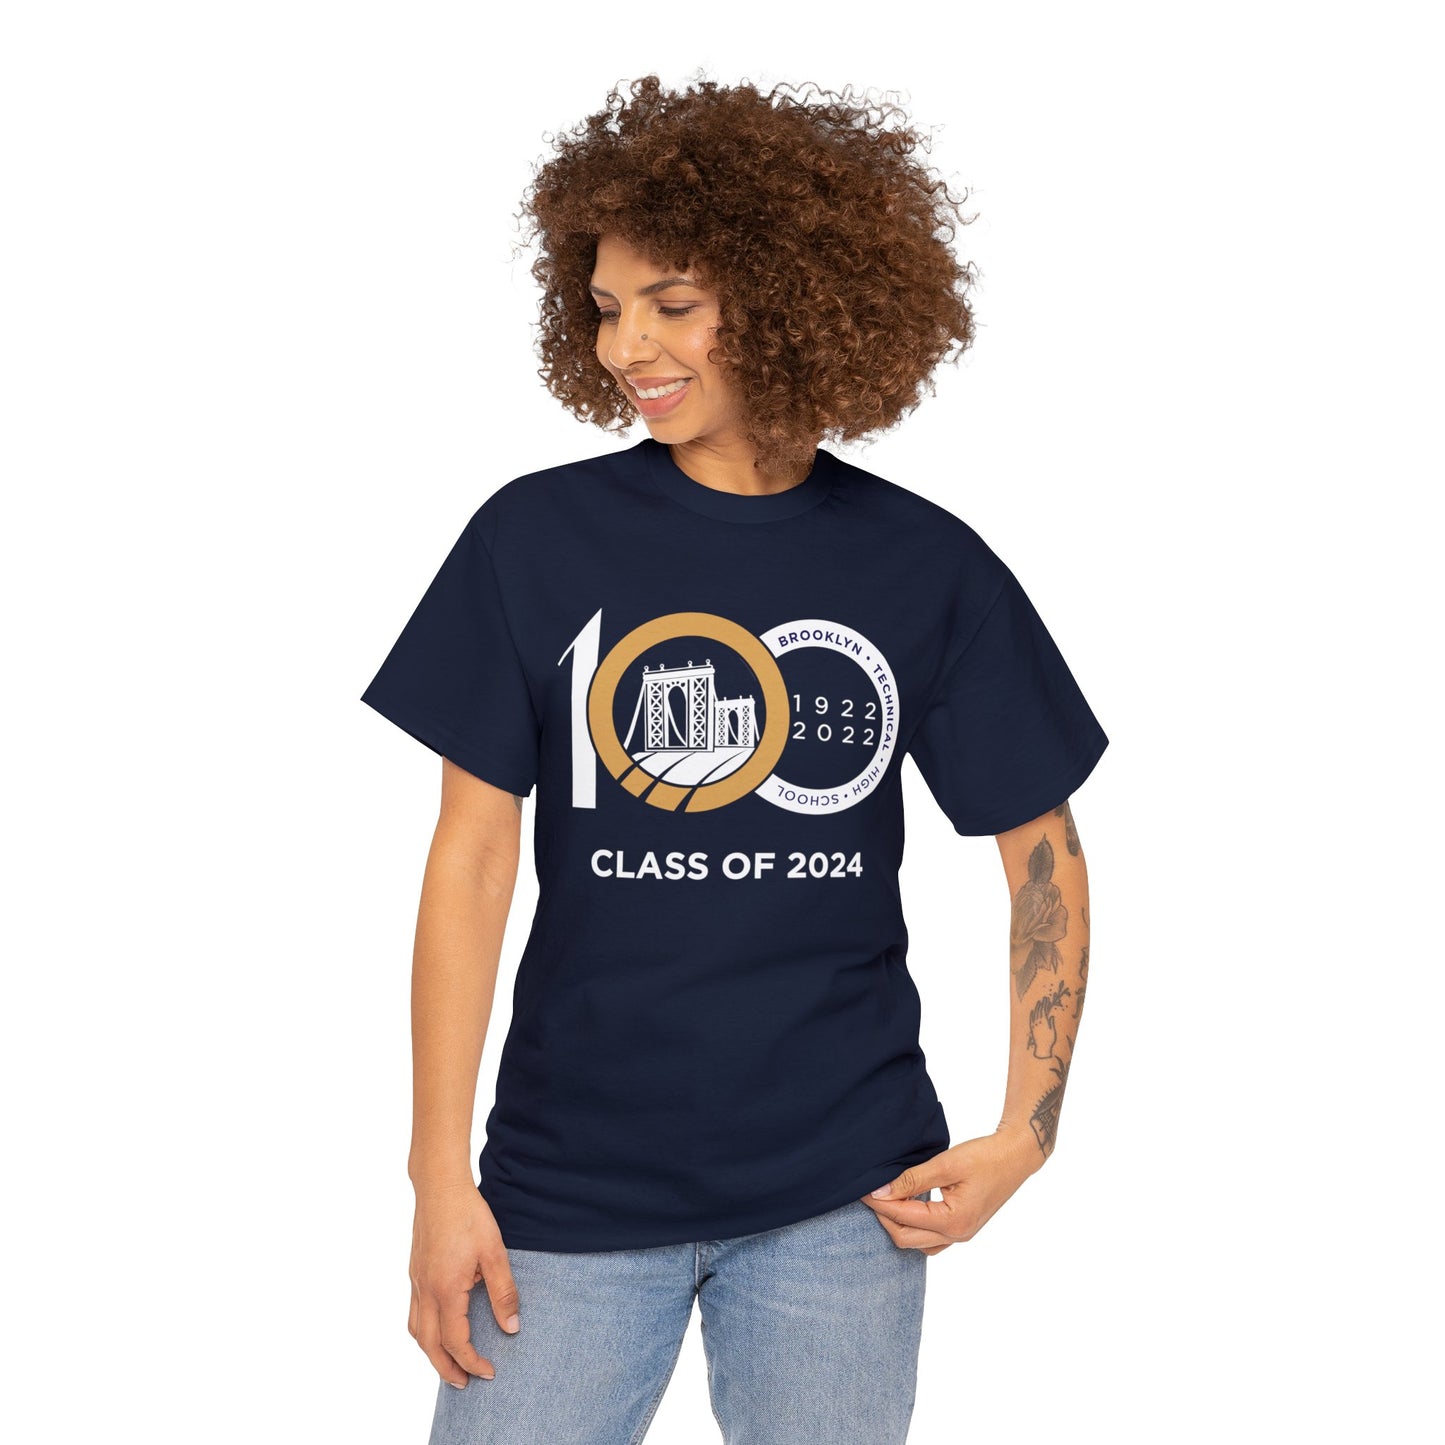 Centennial - Men's Heavy Cotton T-Shirt - Class Of 2024